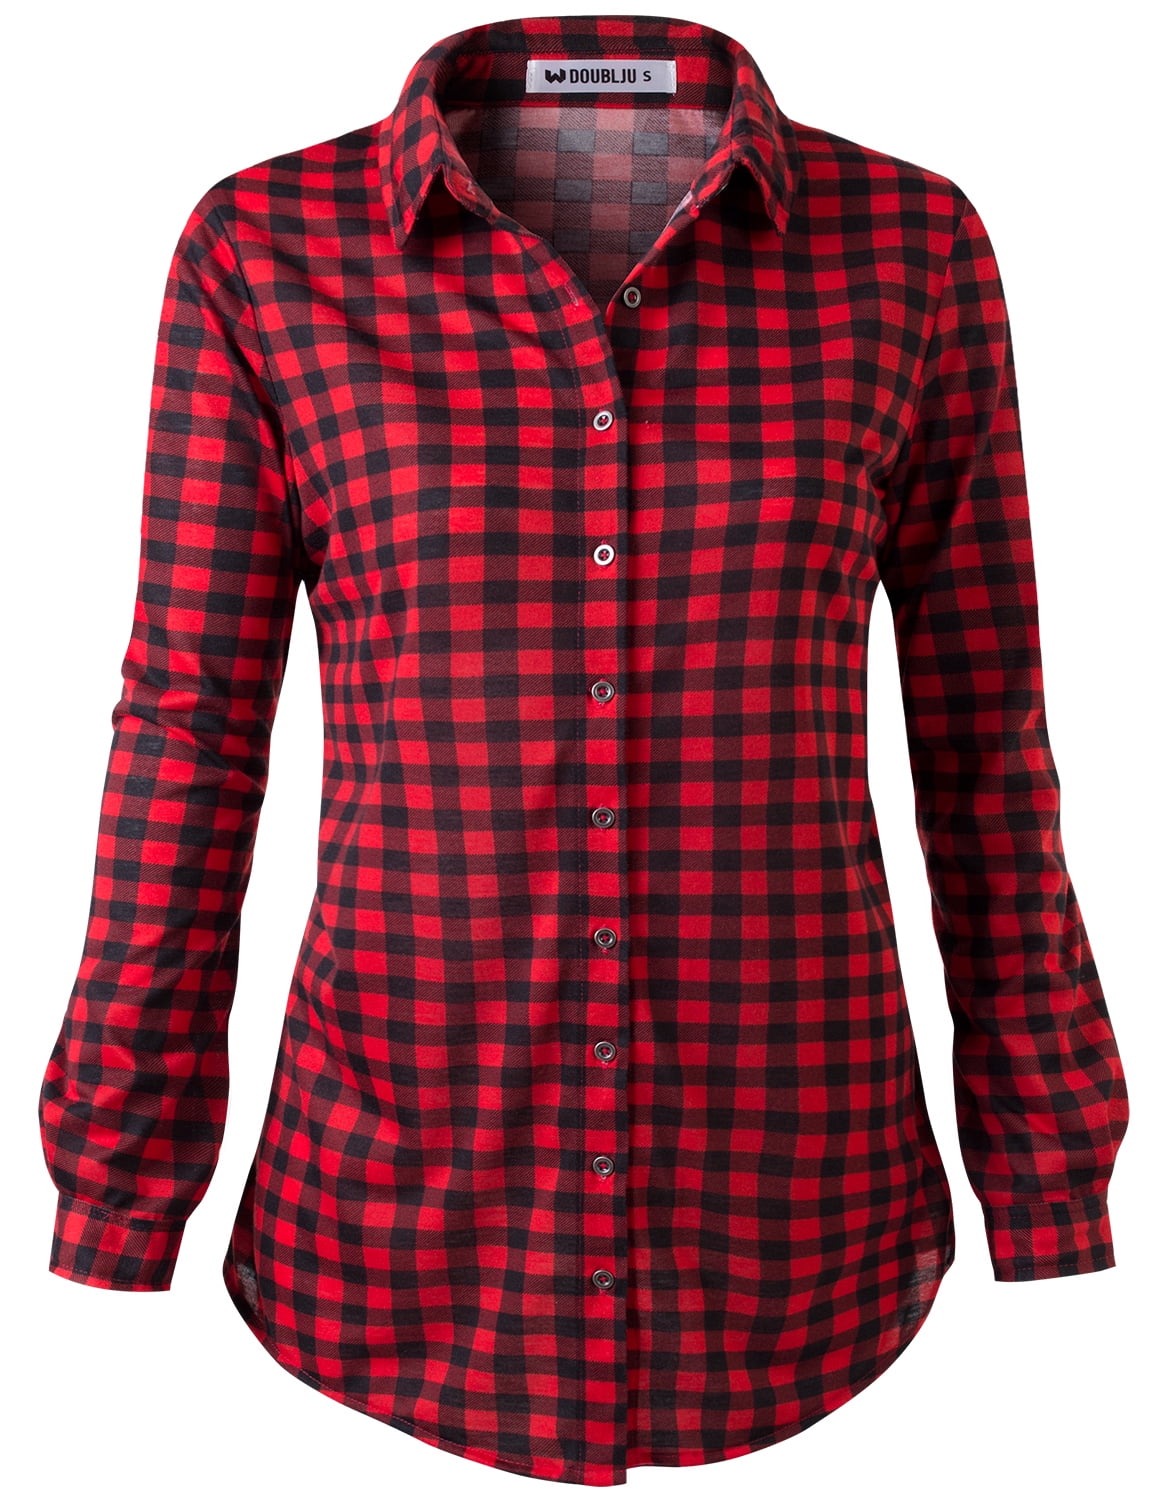 Doublju Women's Plaid Flannel Button Down Shirts (Plus Size Available ...